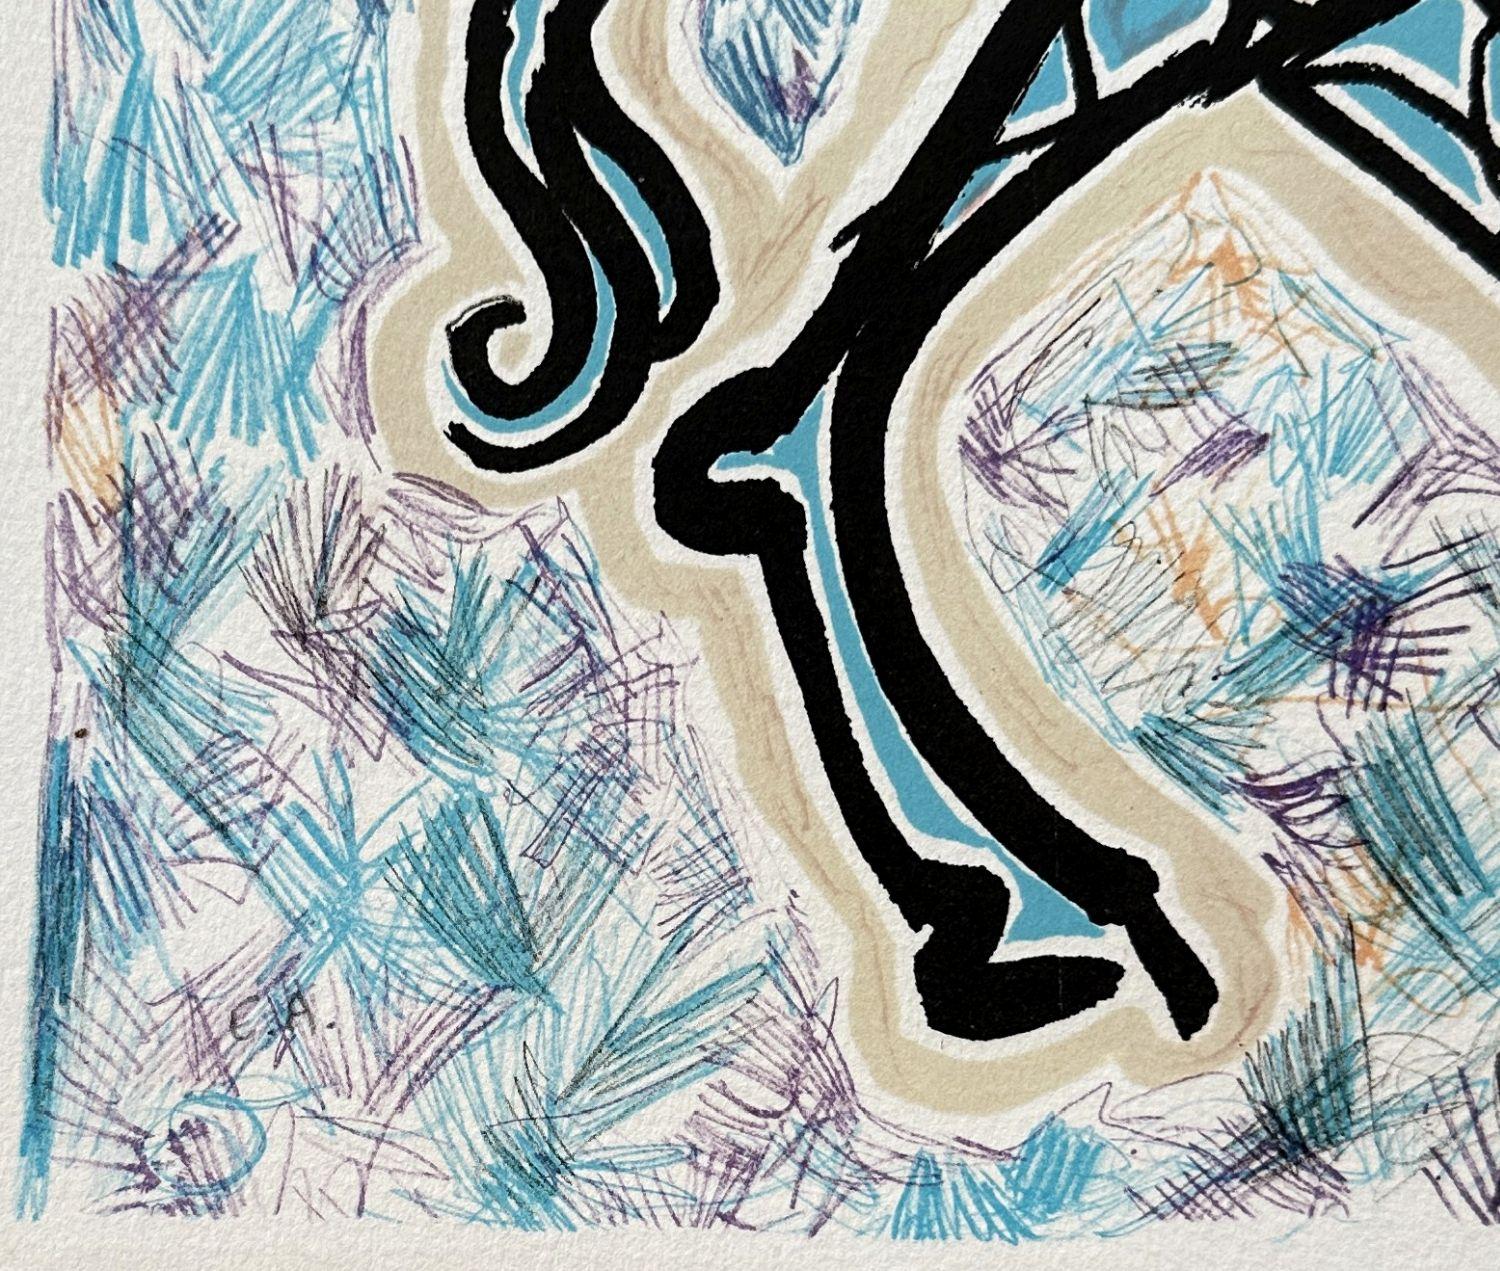 Giraffe on Fire - Original Lithograph Hand Signed - Field #76-2 1